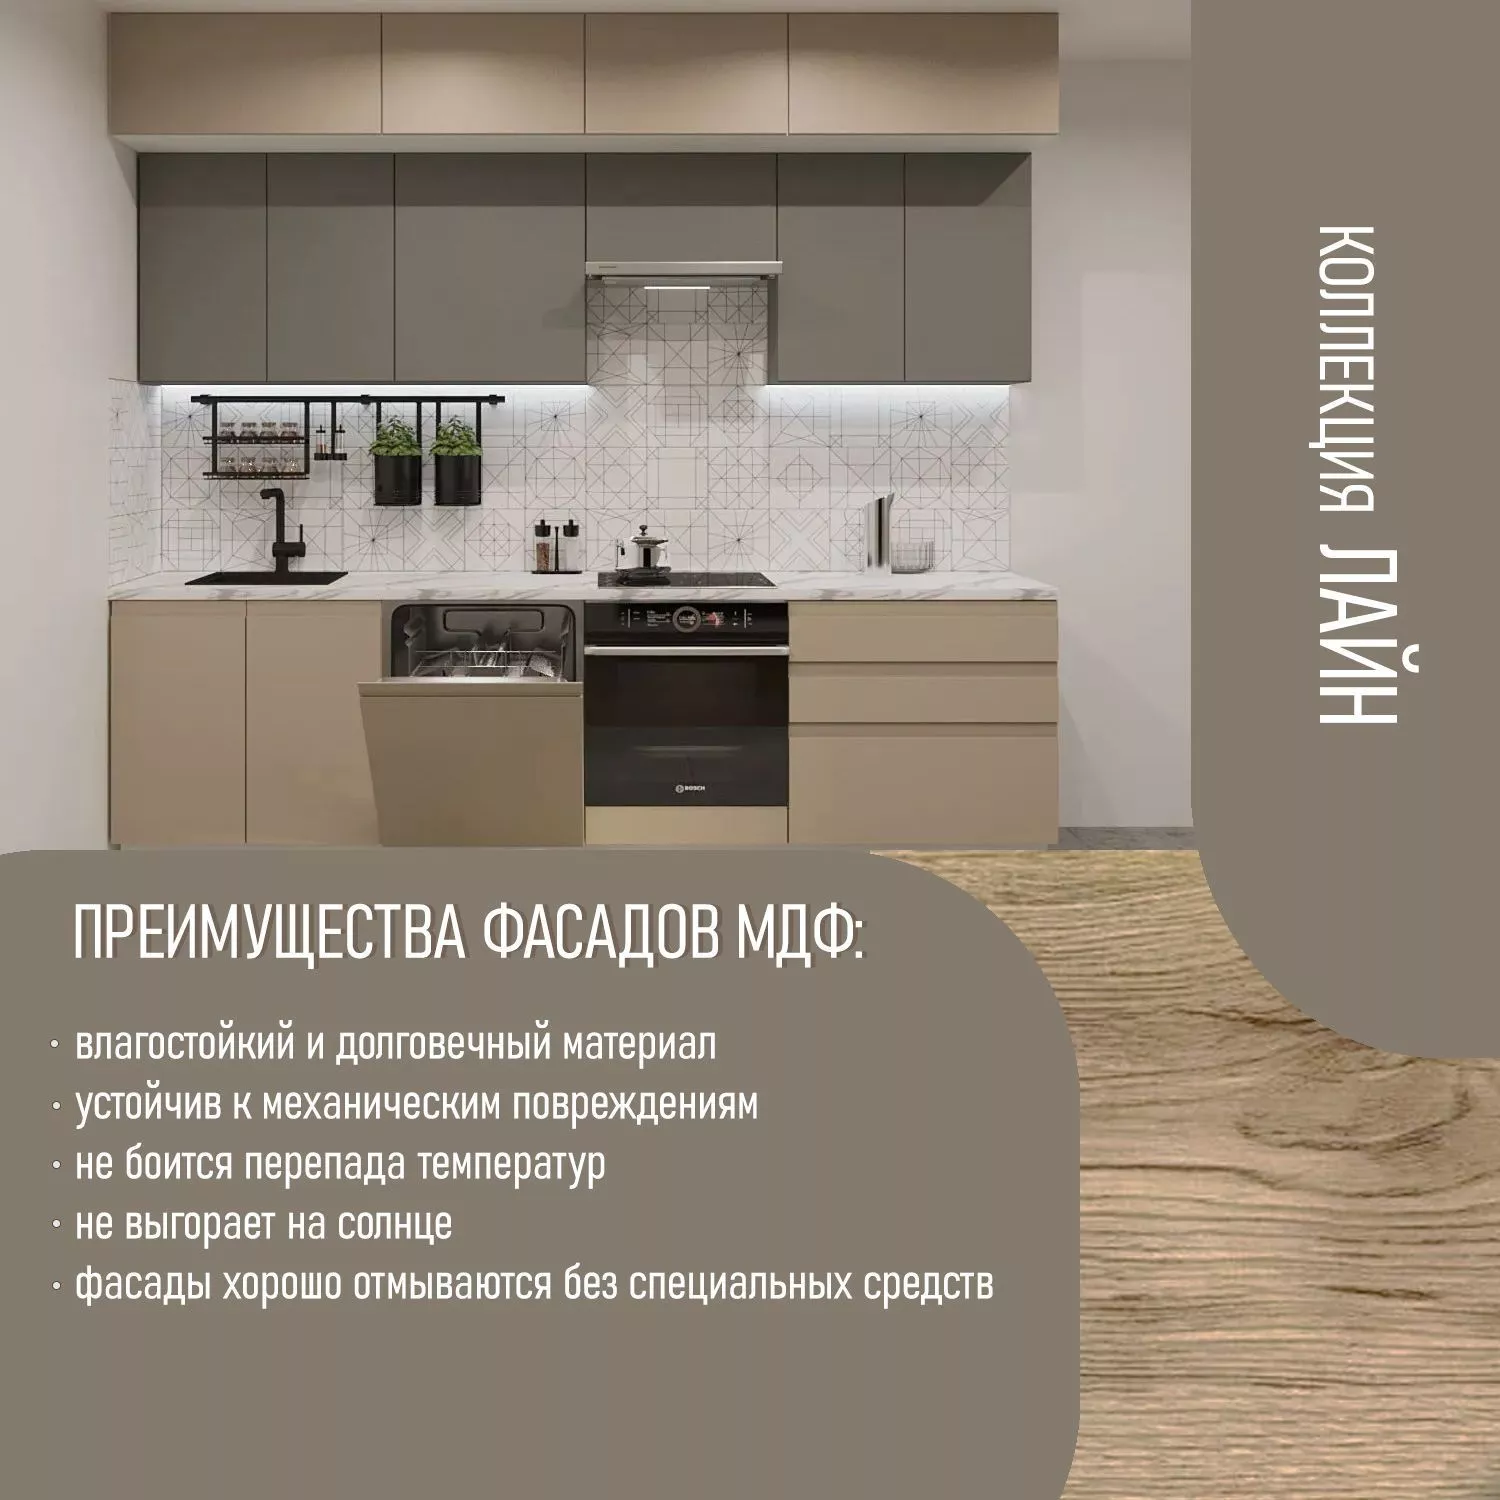 Кухонный гарнитур Обсидиан / Пикрит Лайн 2800 до потолка (арт.45)